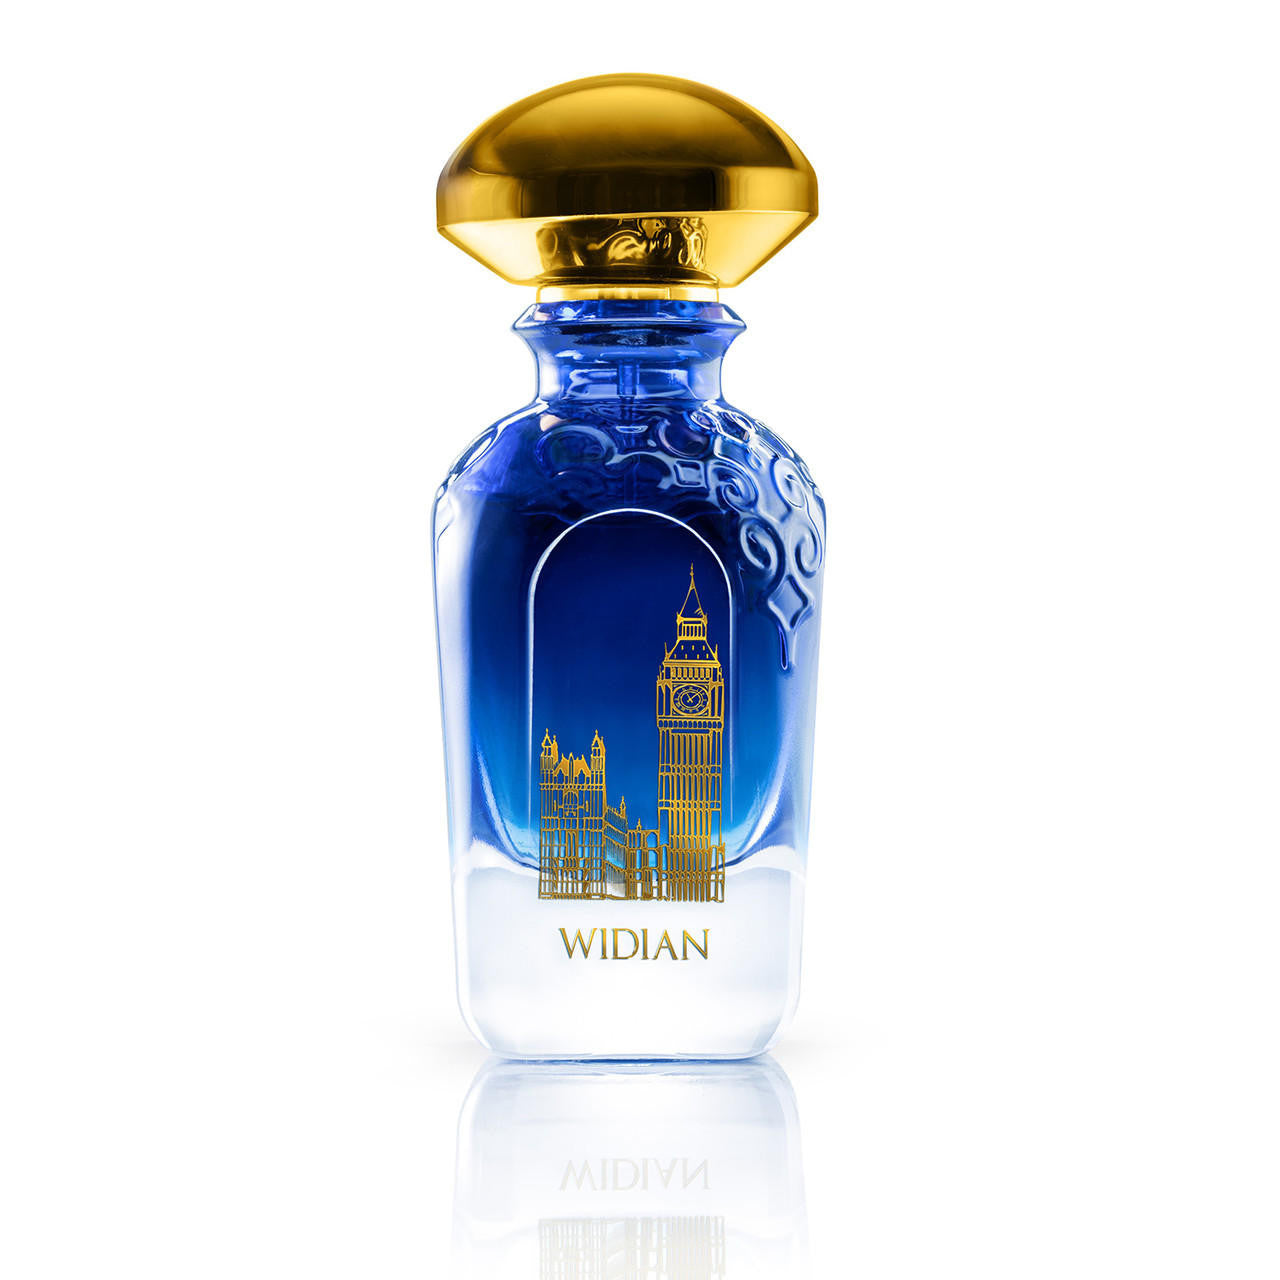 Widian – ZGO Perfumery